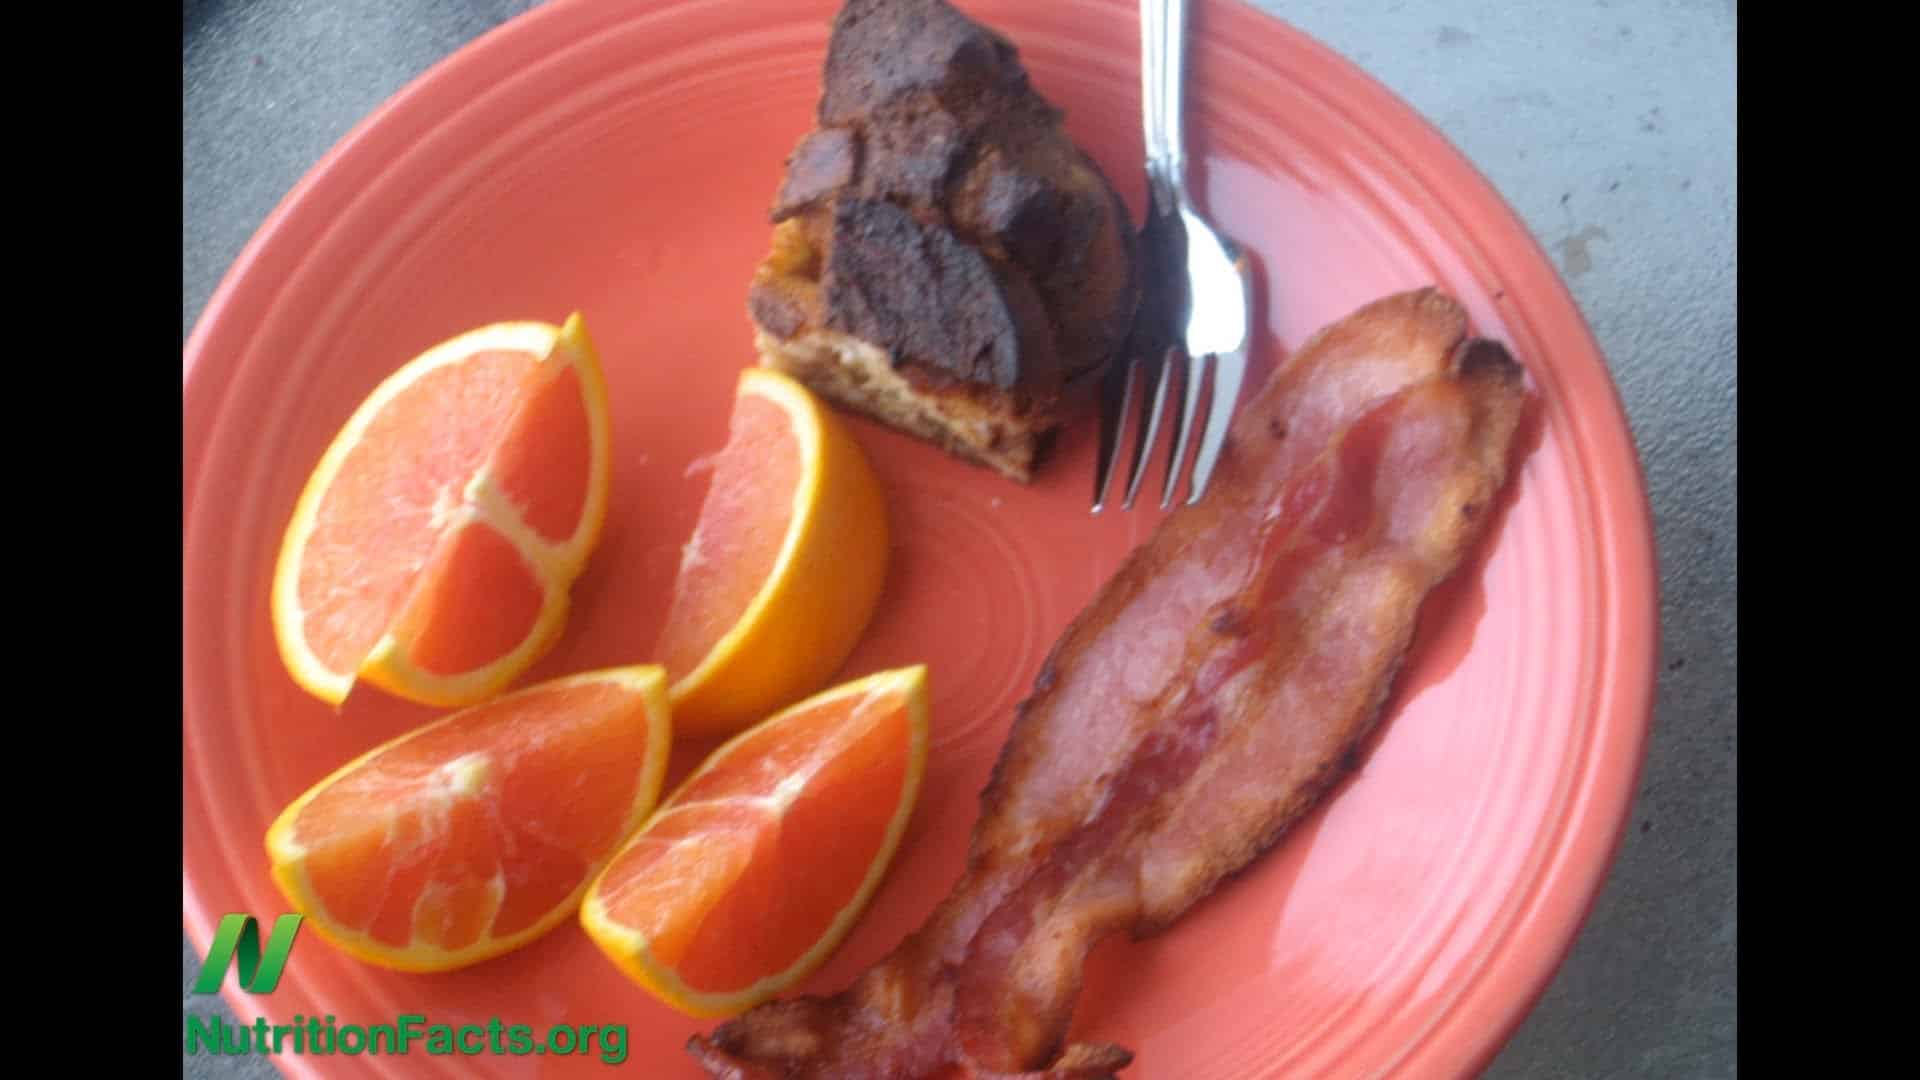 Vitamin C-Enriched Bacon